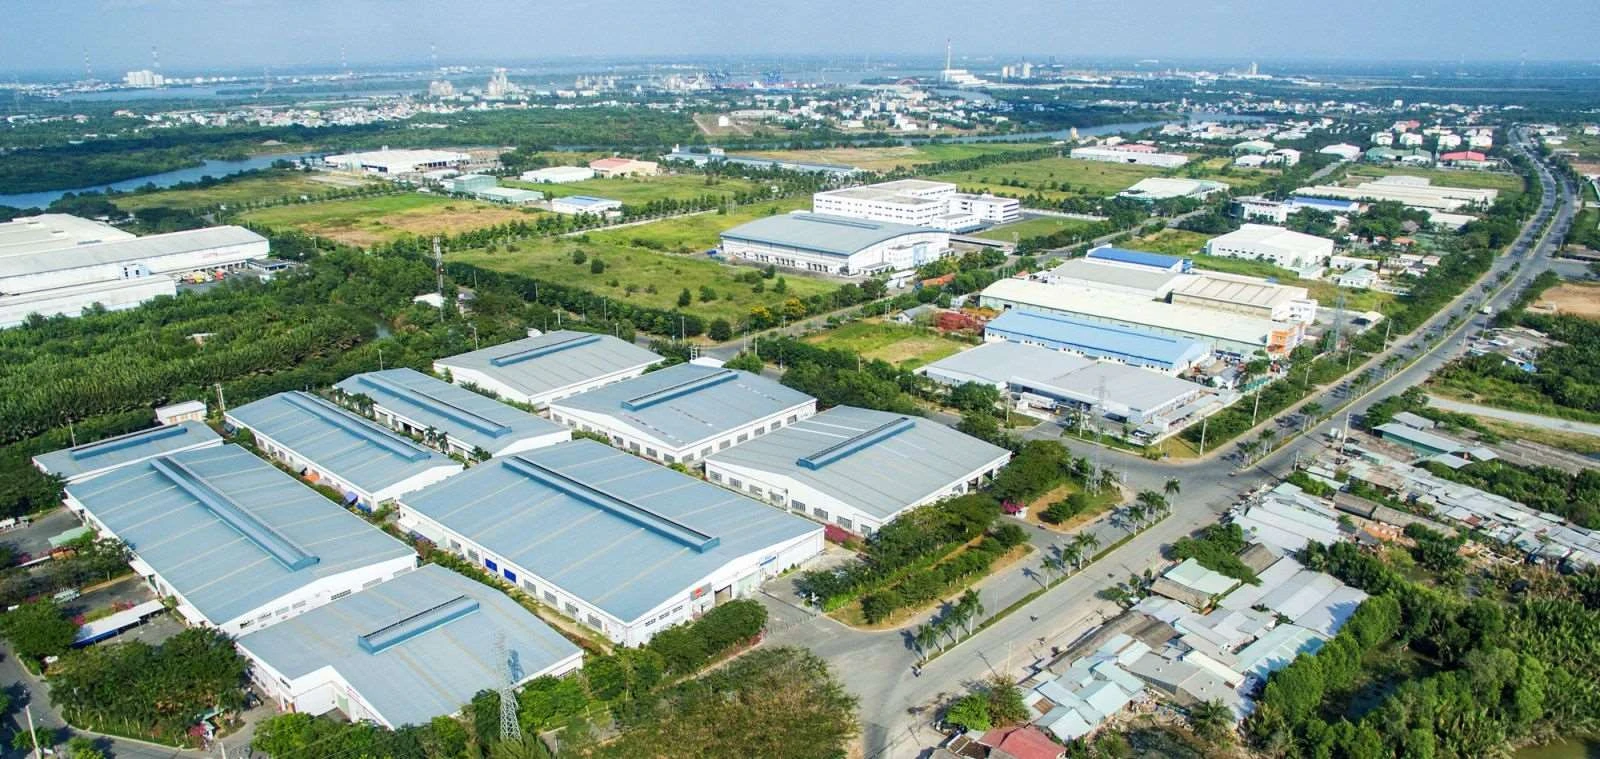 Hà Nội là nơi tập trung của nhiều khu công nghiệp lớn nhỏ với đa dạng ngành nghề